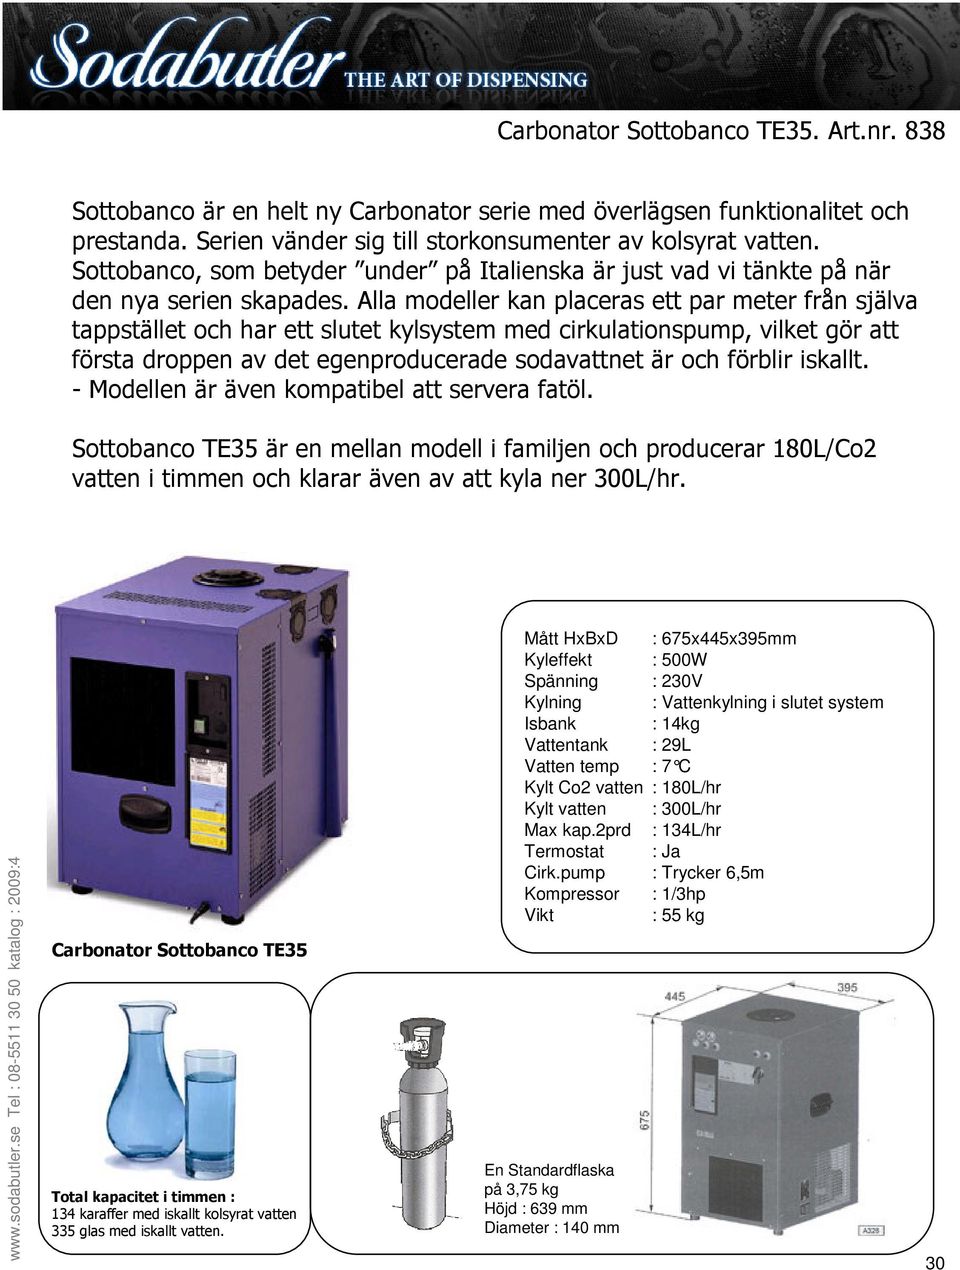 Carbonator Sottobanco TE35 134 karaffer med iskallt kolsyrat vatten 335 glas med iskallt vatten.